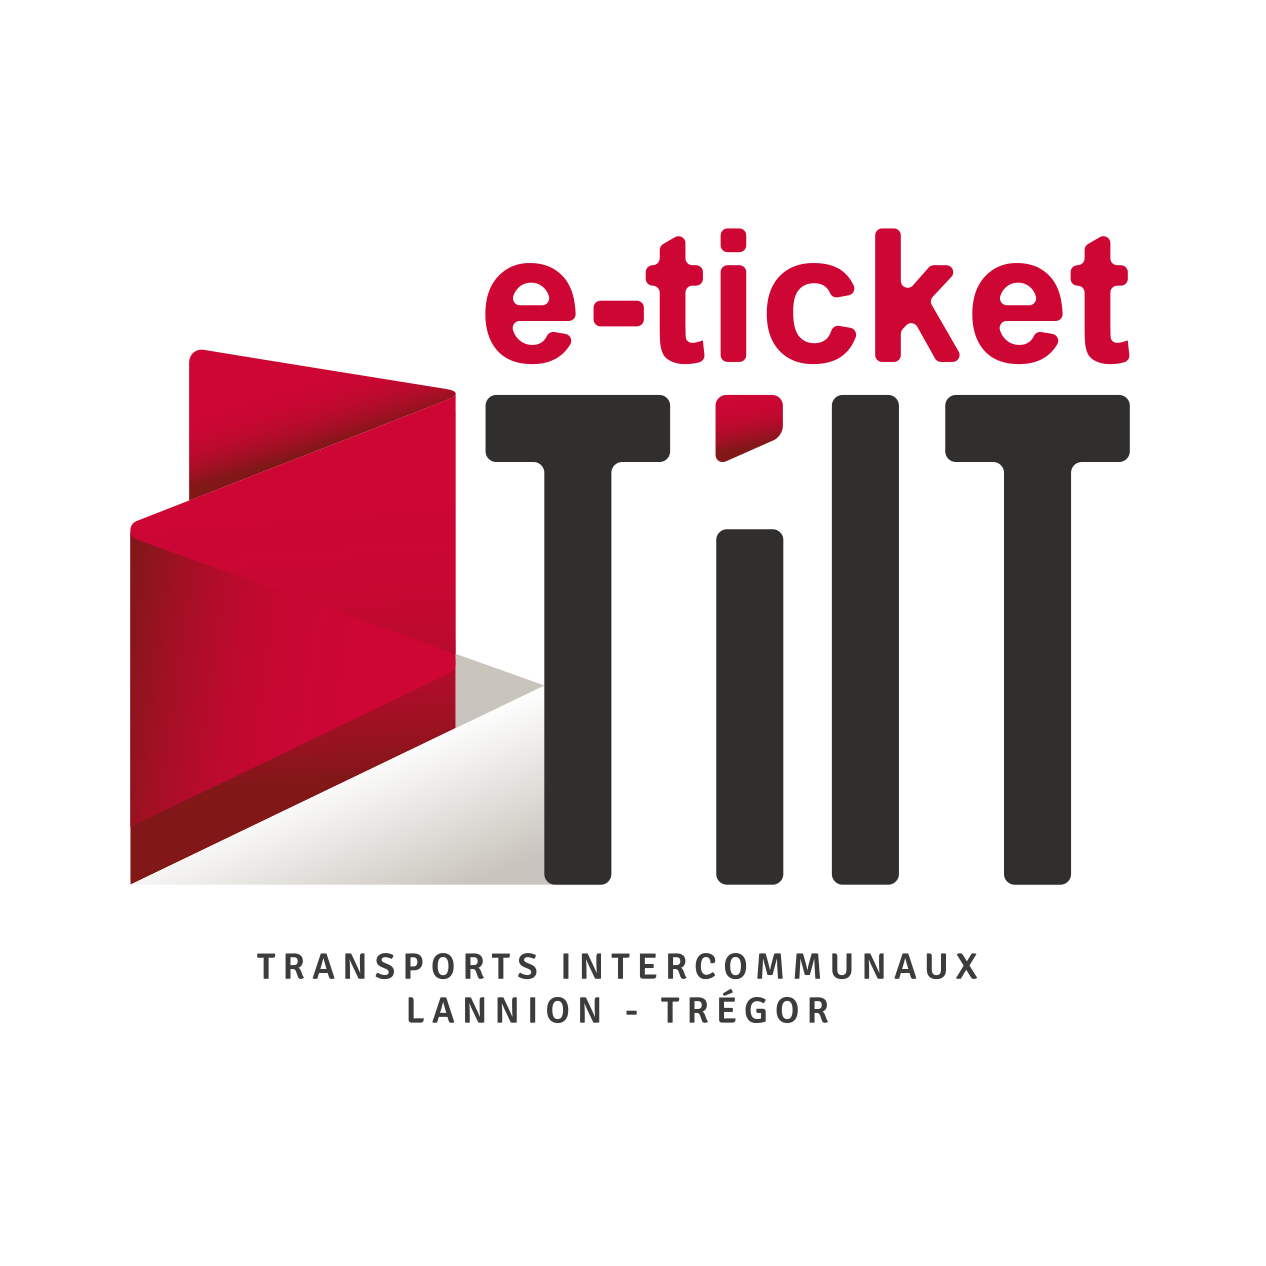 e-ticket tilt